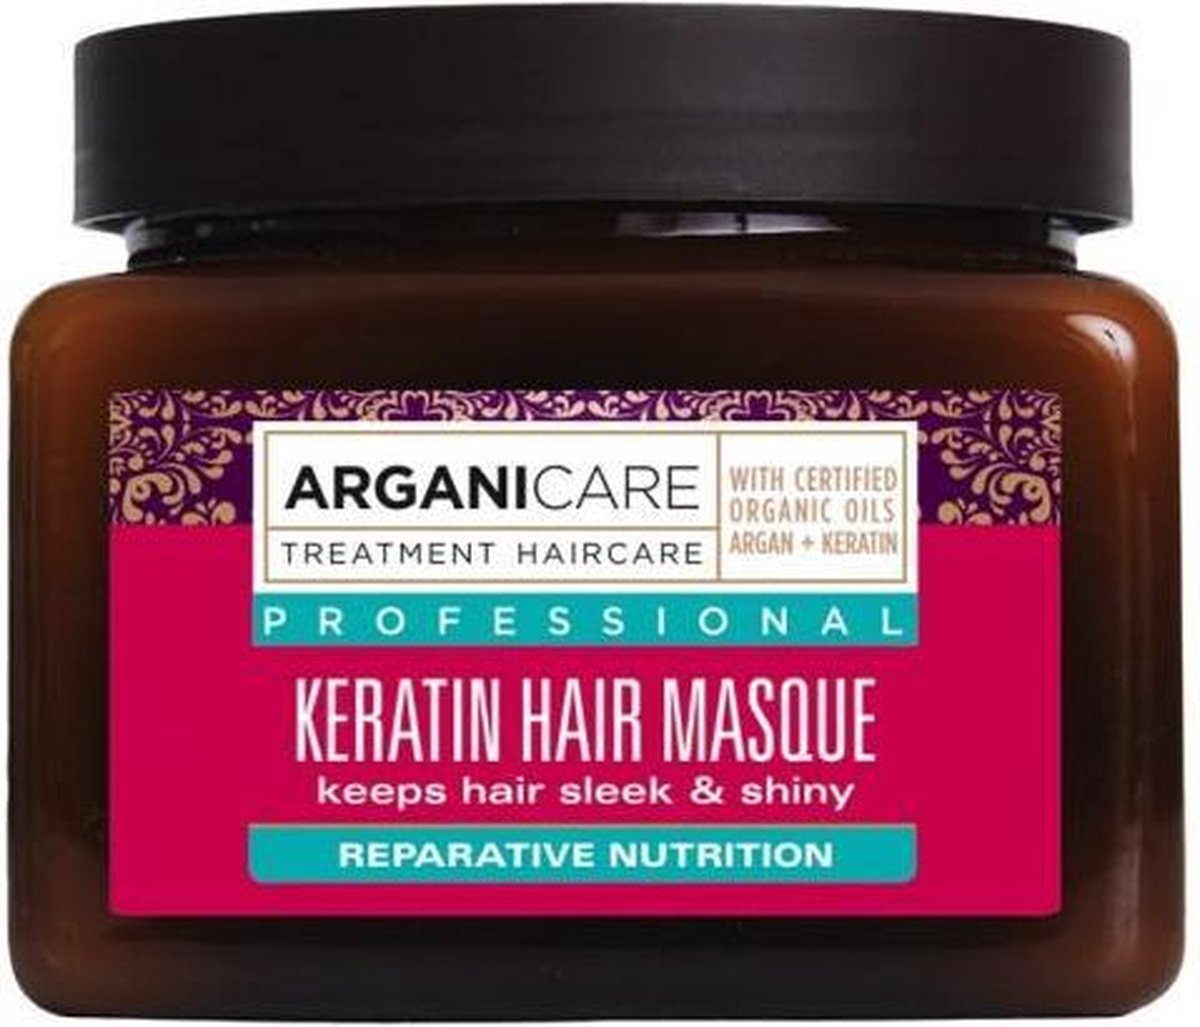 ARGANICARE KERATIN HAIR MASQUE - ARGAN & KERATIN 500 ML